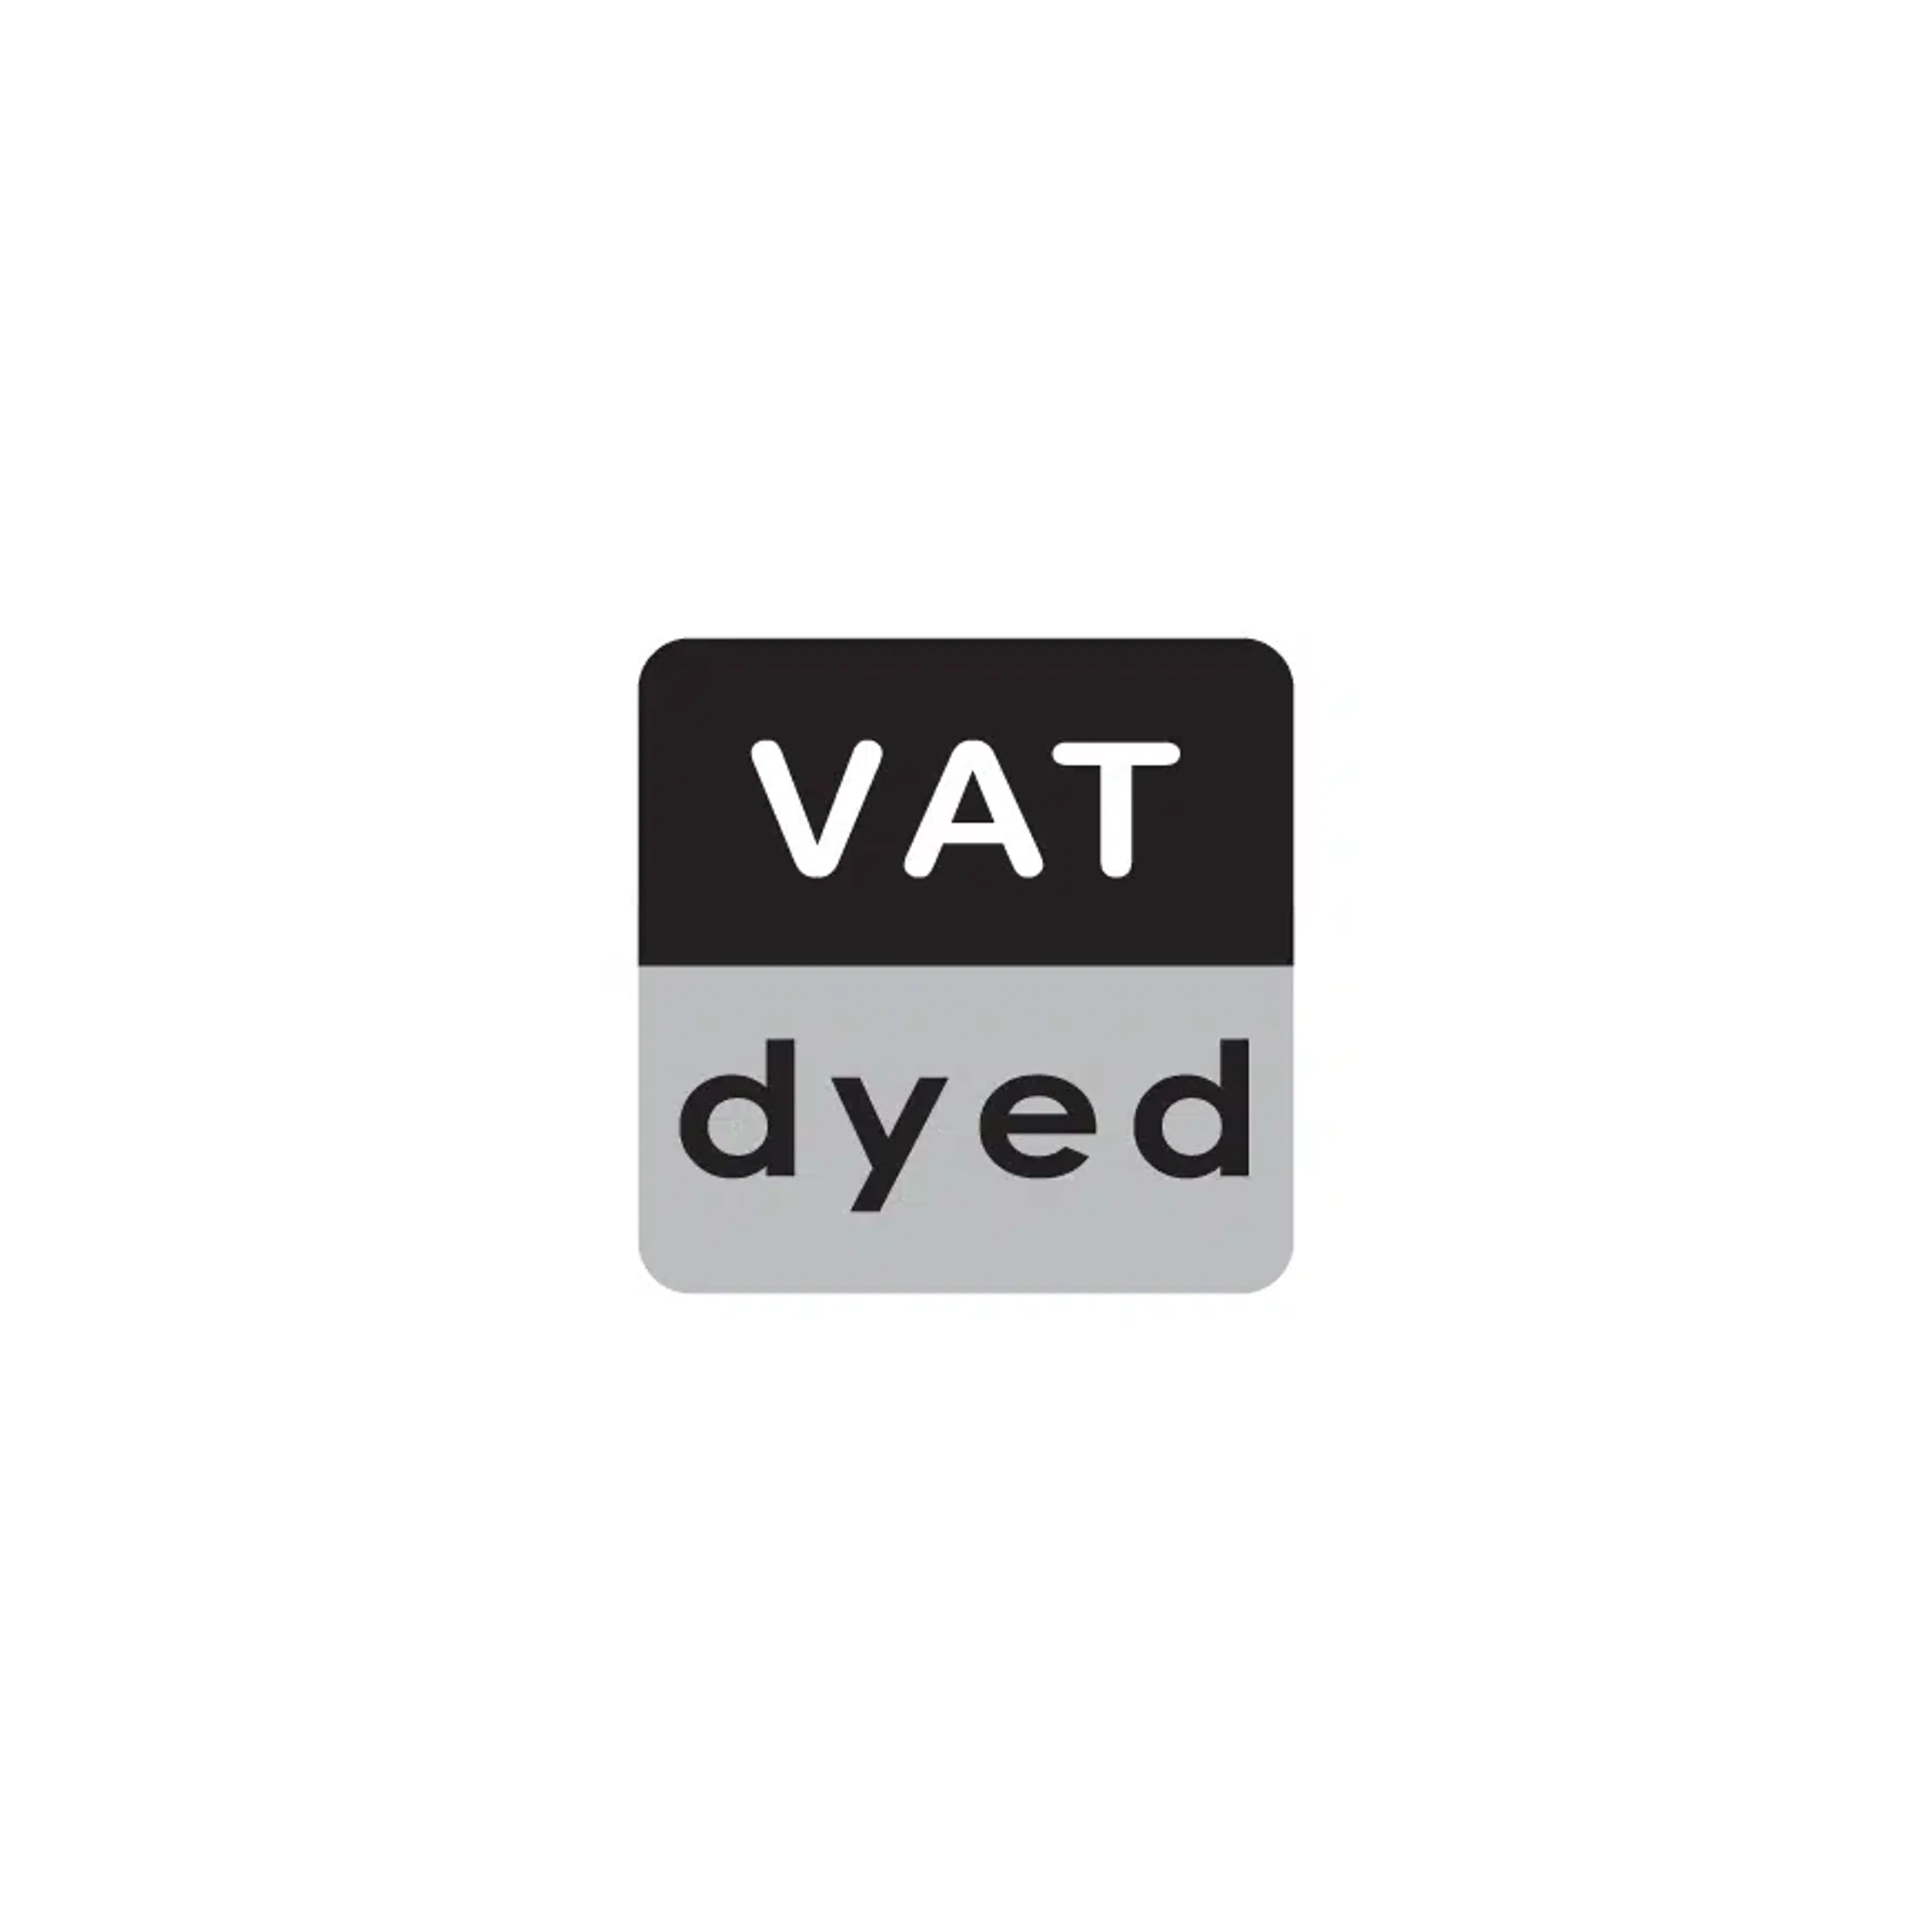 VAT Dyed (1)